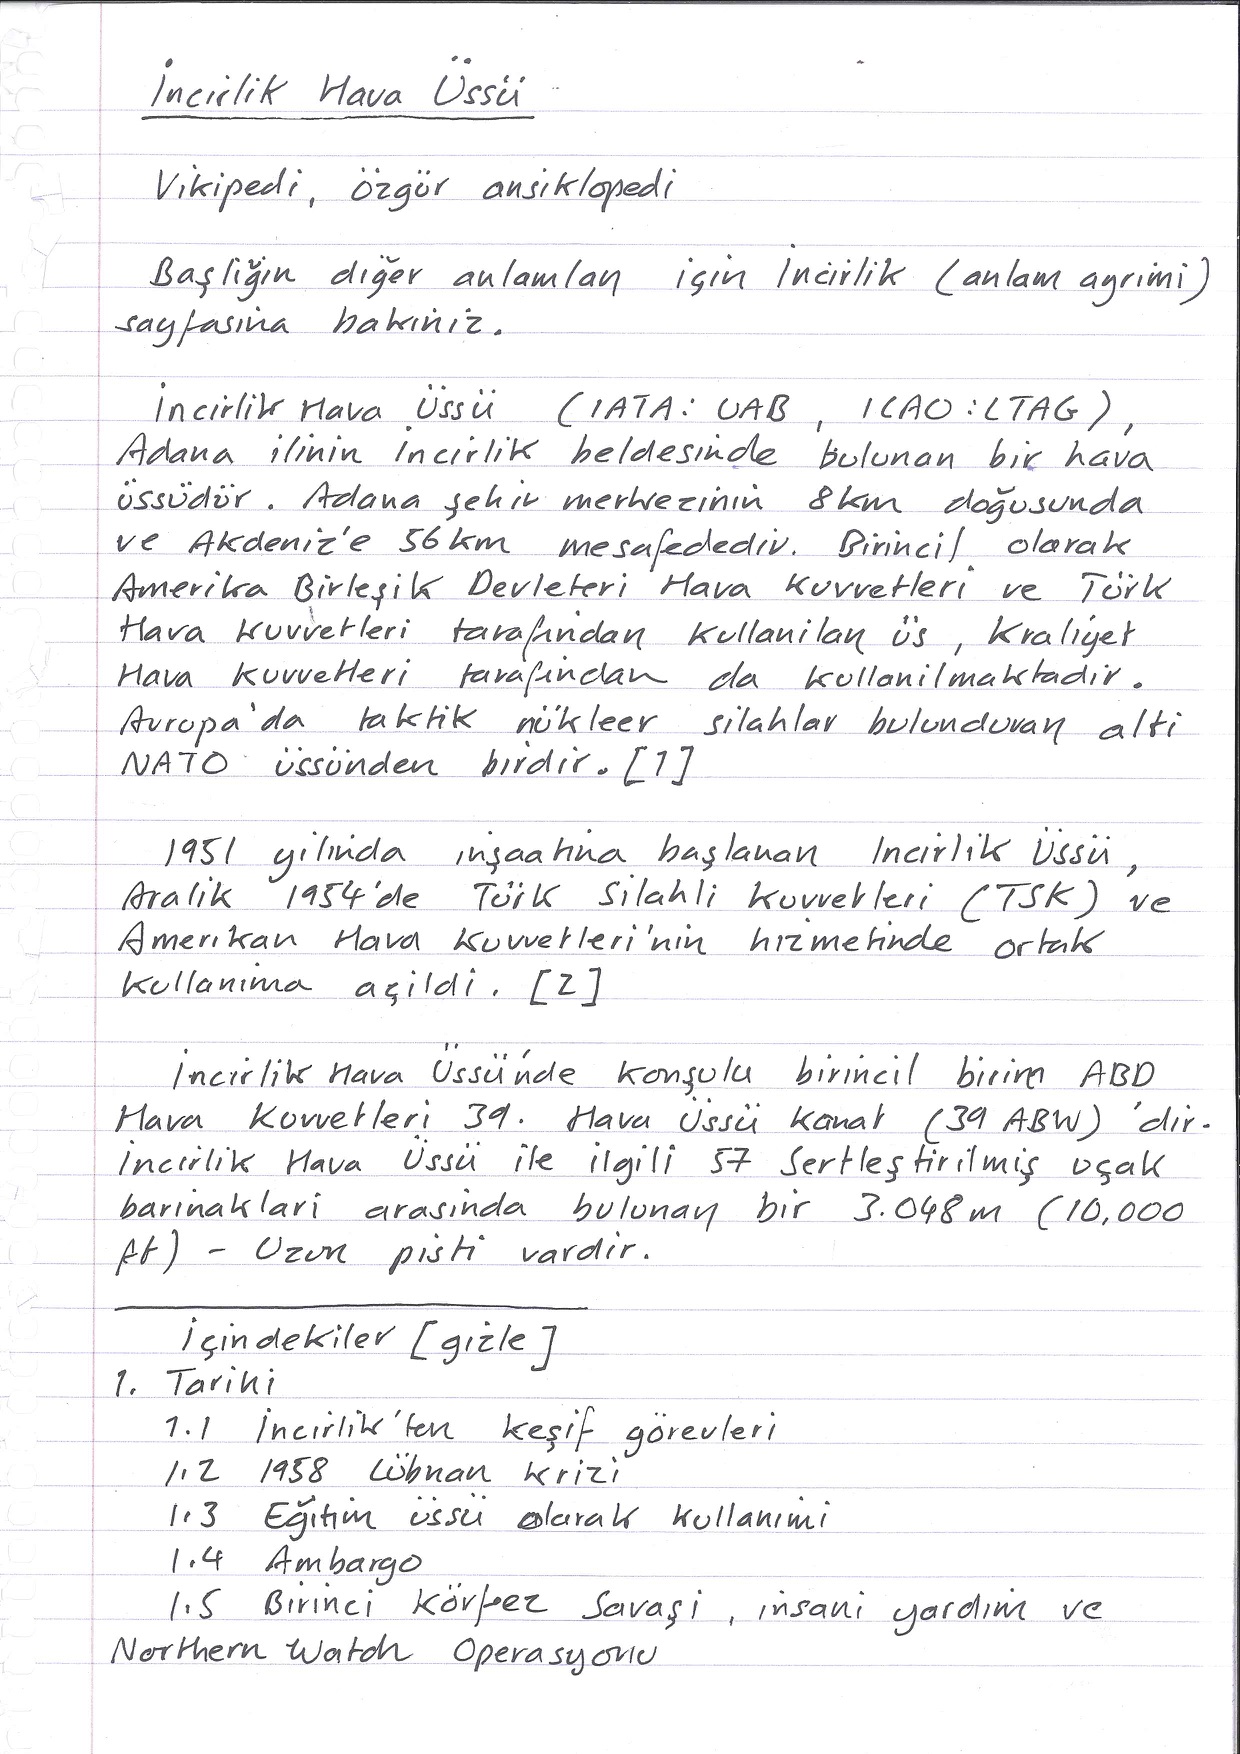 Incirlik Air Base, handwritten